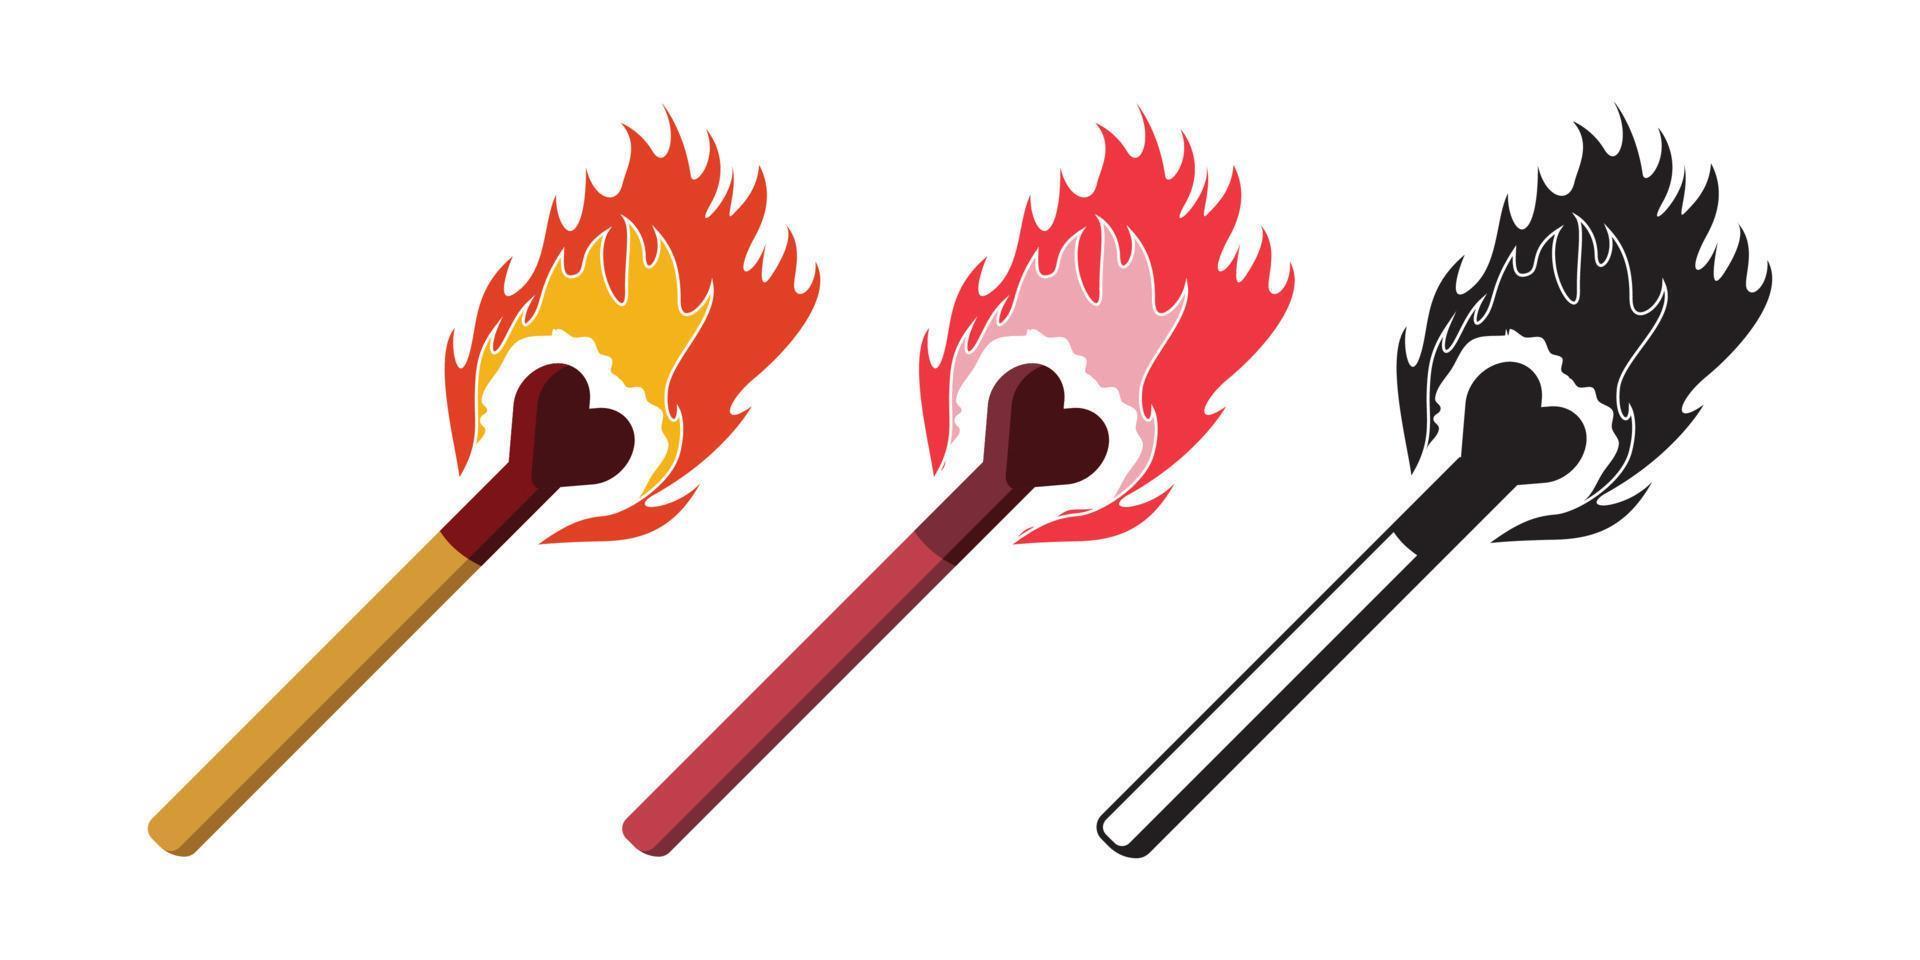 flammendes Herz-Match-Stick-Vektor-Design, Match-Stick-Doodle kann für Aufkleber, Waren oder Bekleidung verwendet werden vektor